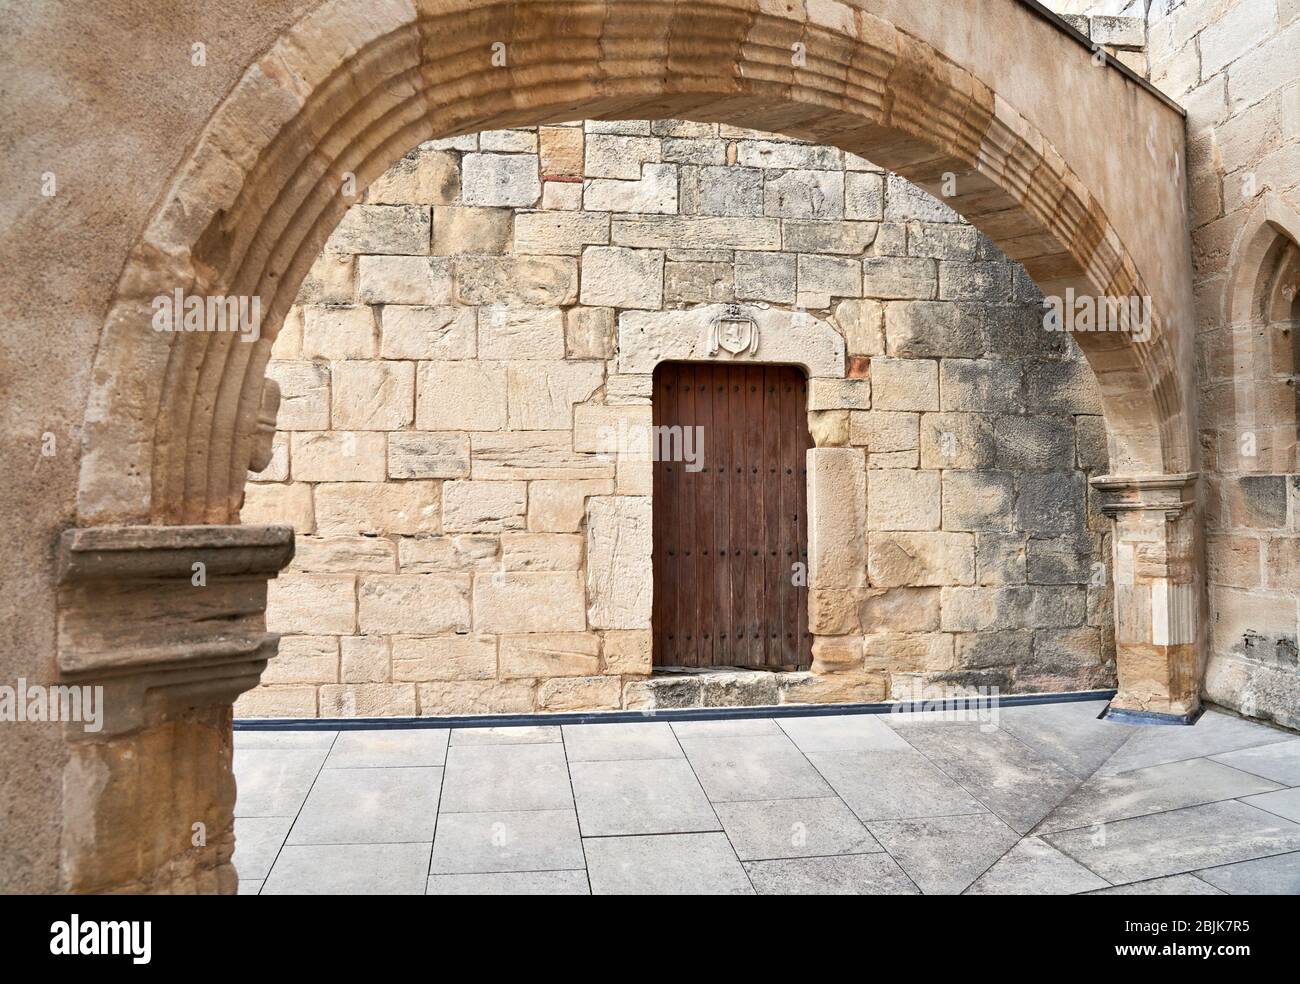 Monastery of Santa Maria de Poblet, Tarragona province, Catalonia, Spain, Europe Stock Photo